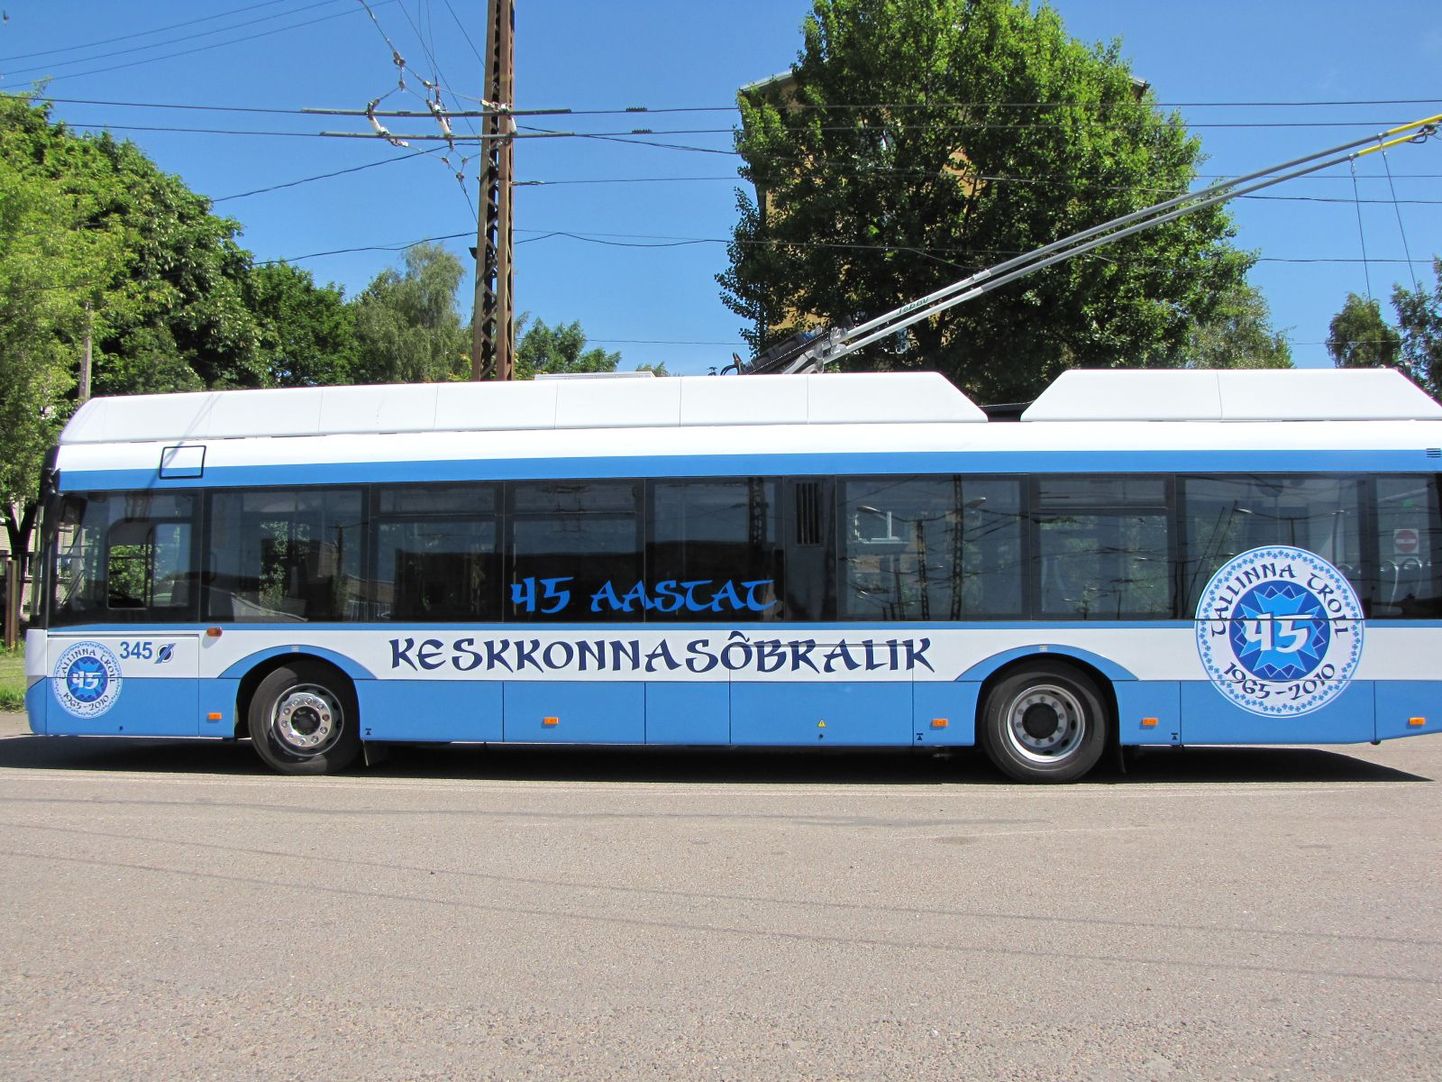 Завтра отмечается 45-летие первой троллейбусной линии в Таллинне.